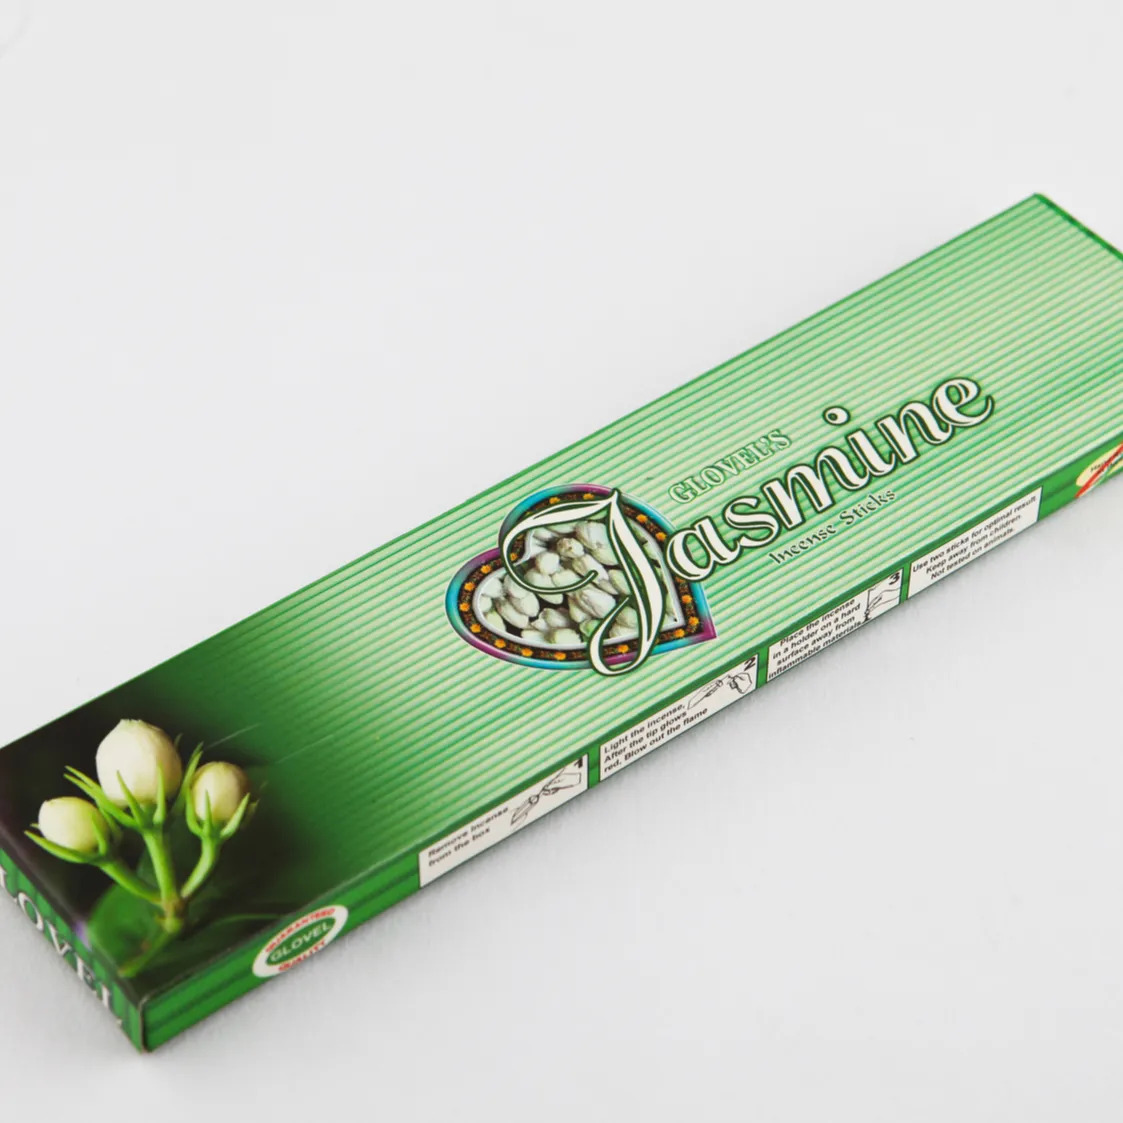 Jasmine Flat Packing Stik Aroma Dupa Terbaru Stik Aroma Menenangkan dan Menyegarkan Yang Ideal untuk Rumah dan Kantor Anda